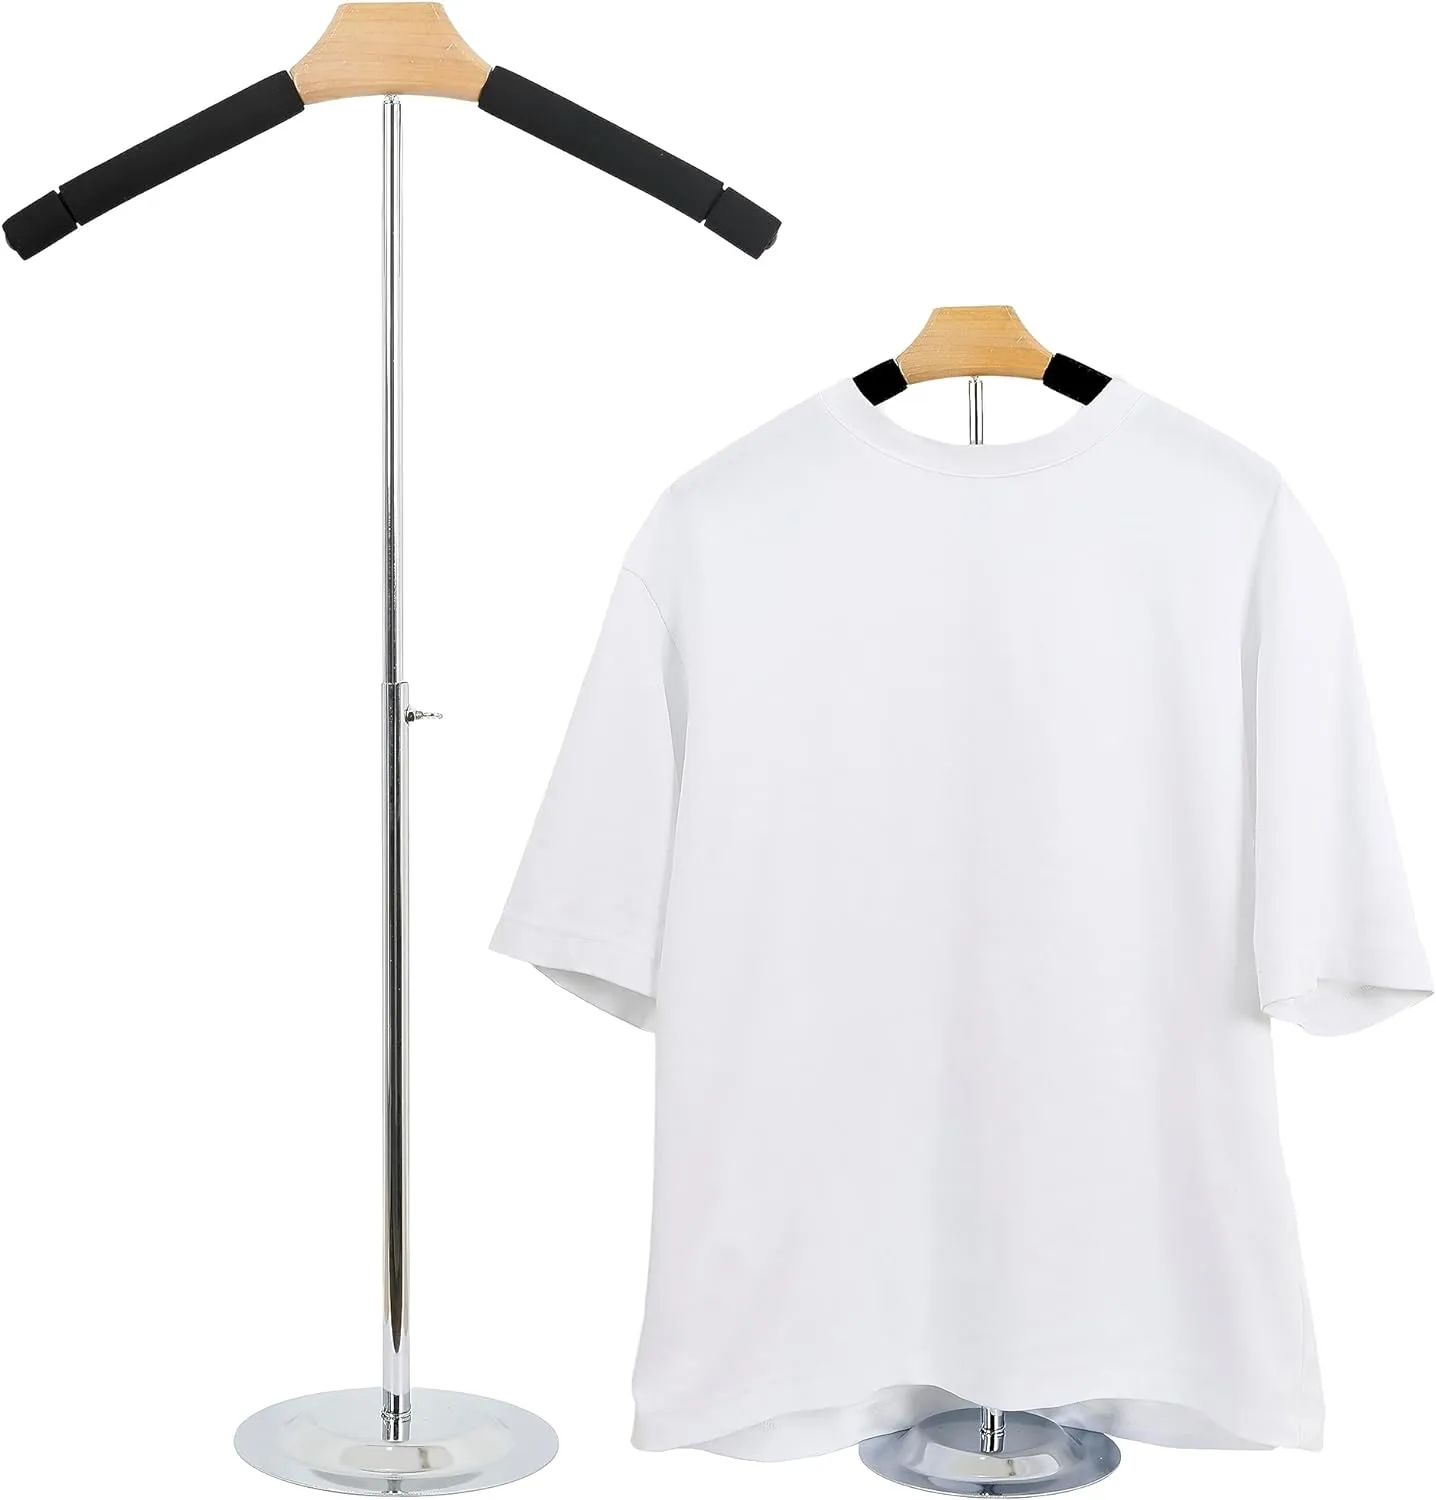 Suporte de exibição ajustável para camisetas - Cabide portátil de metal preto para camisas e casacos